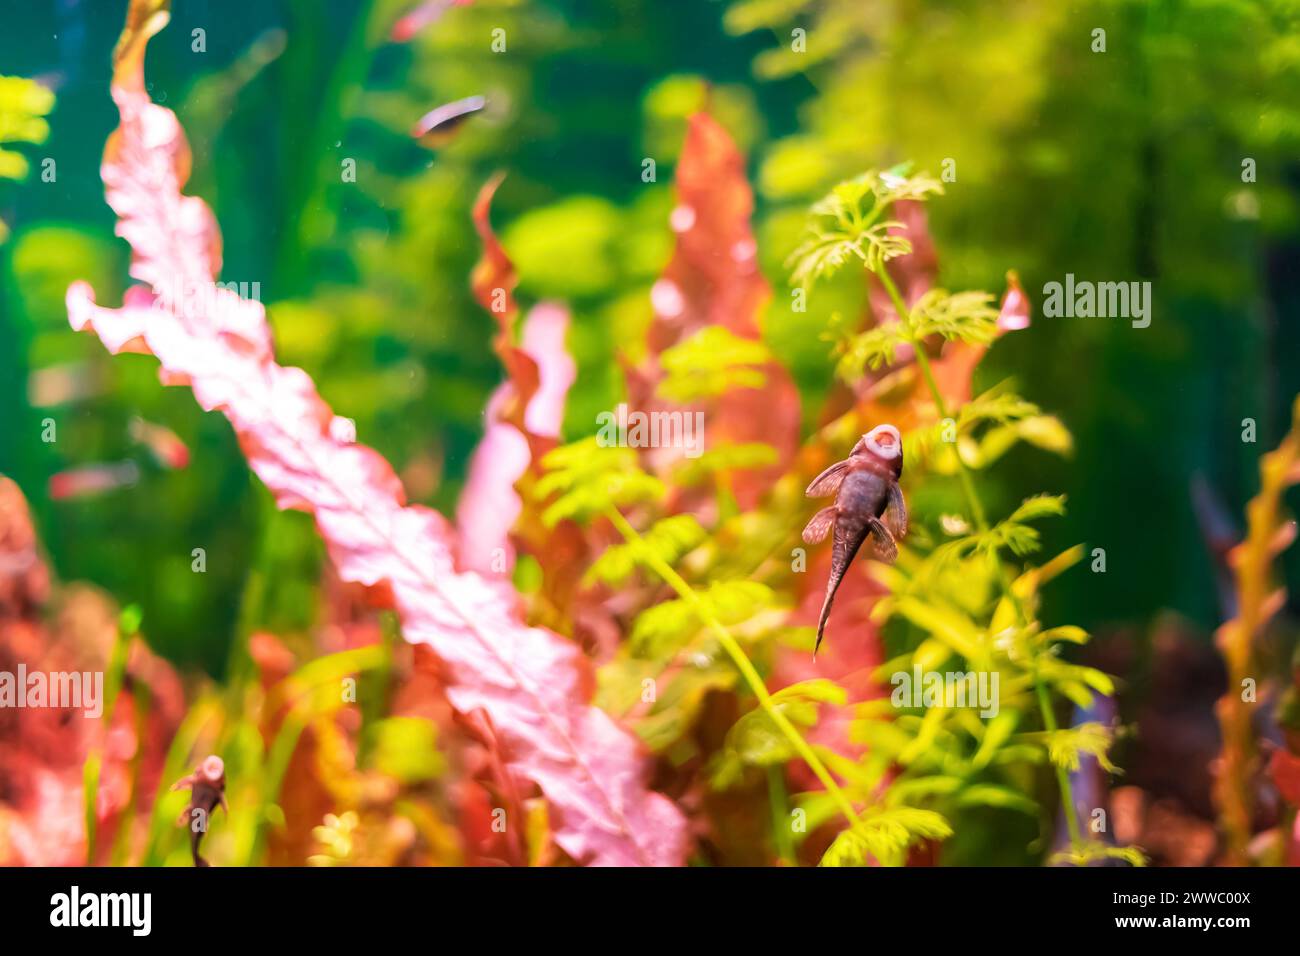 Tropical marine fish stuck in natural habitat. Oceanarium, wildlife, colorful underwater world, aquarium. Selective focus, soft focus. Stock Photo